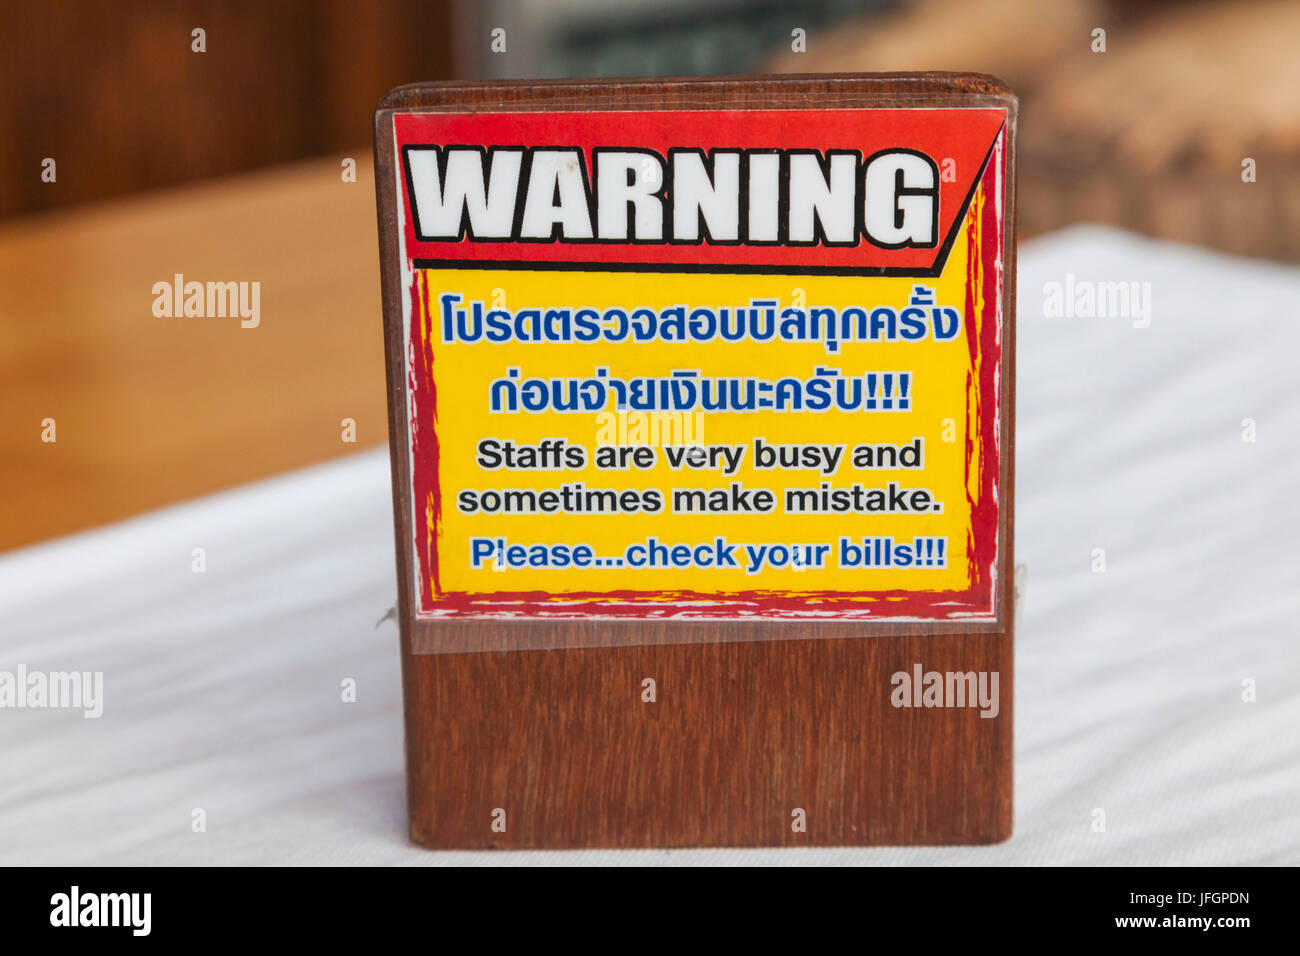 Thailand, Bangkok, Khaosan Road, Restaurant Warning Sign Asking Customers to Check Their Bill Stock Photo